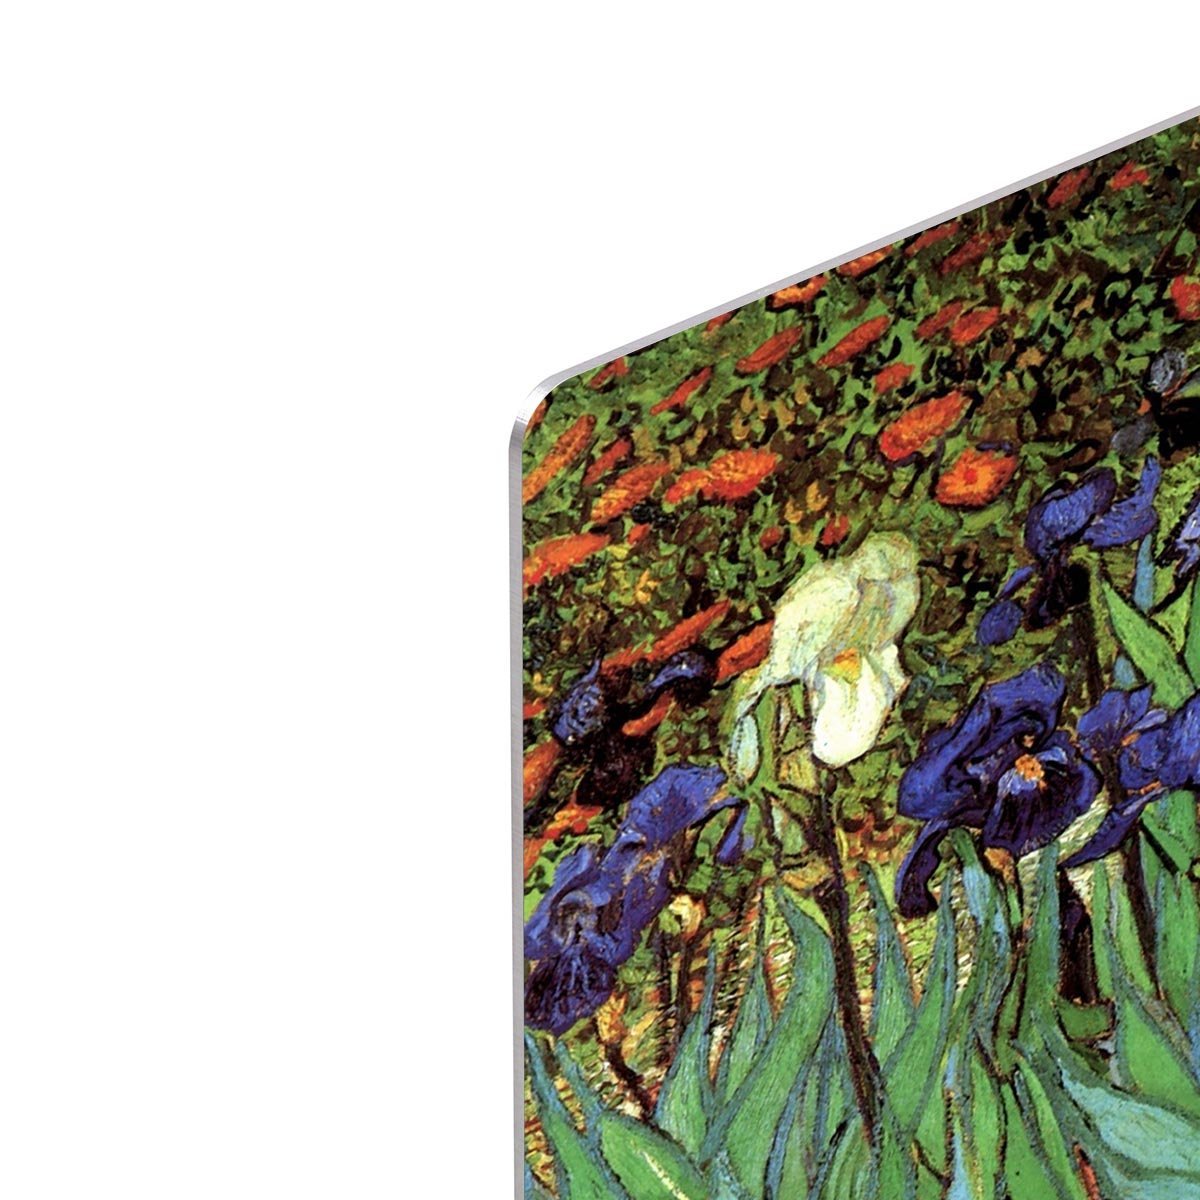 Irises 2 by Van Gogh HD Metal Print